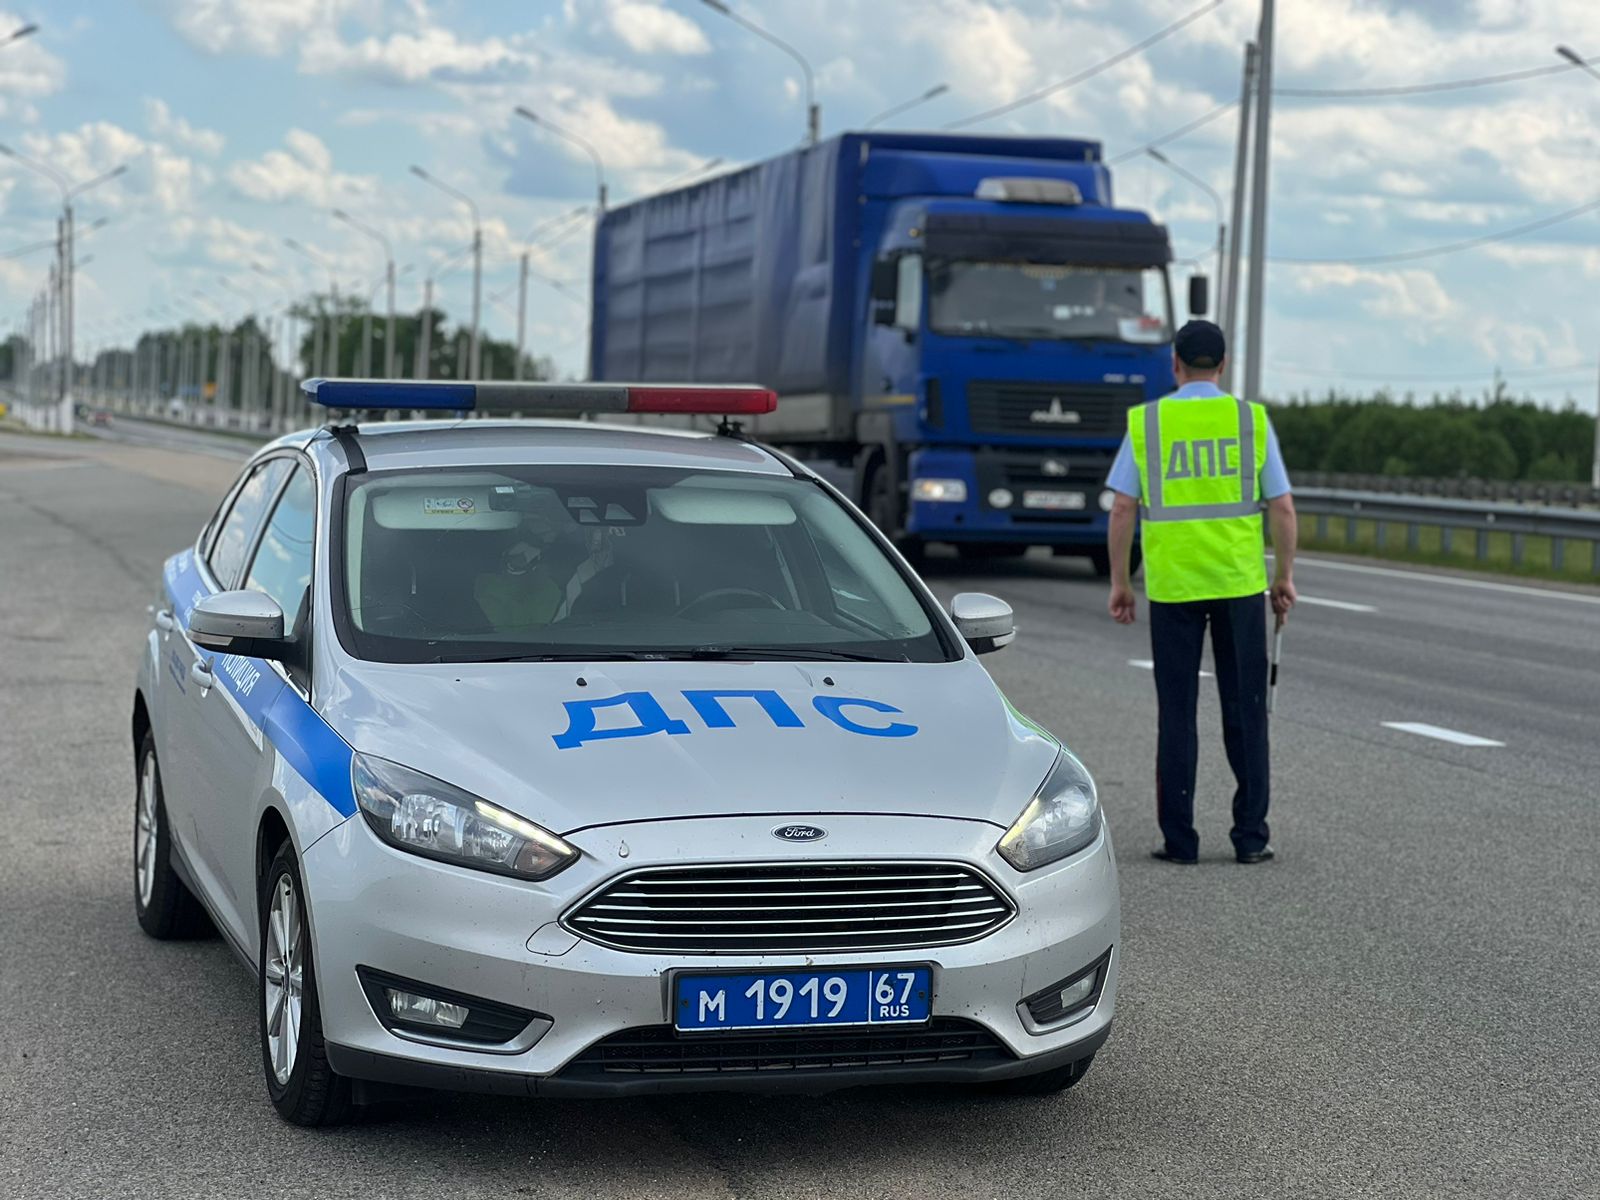 3 июня в Смоленске пройдут «сплошные проверки» водителей транспорта